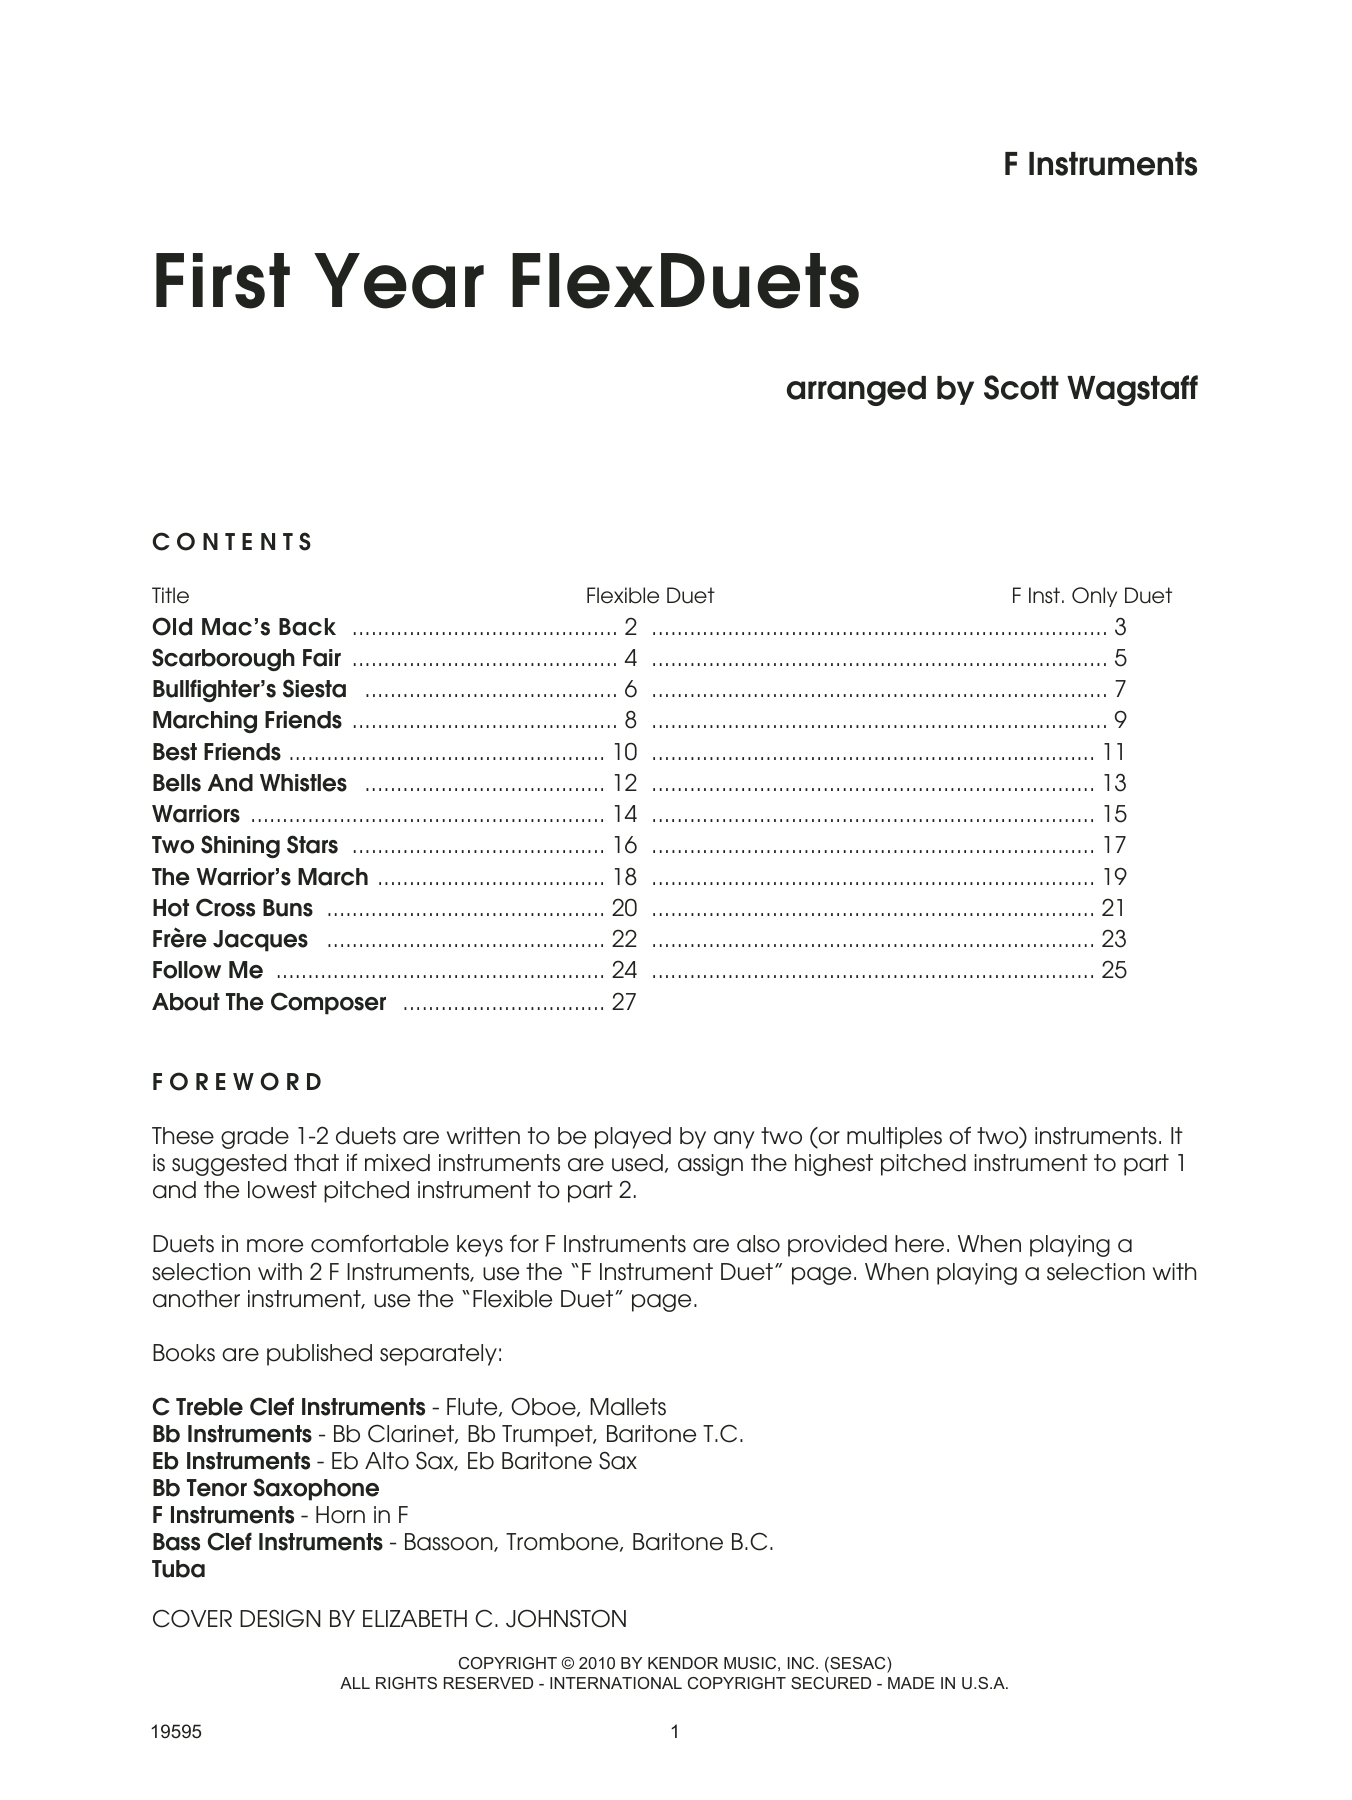 First Year FlexDuets - F Instruments (Brass Ensemble) von Scott Wagstaff